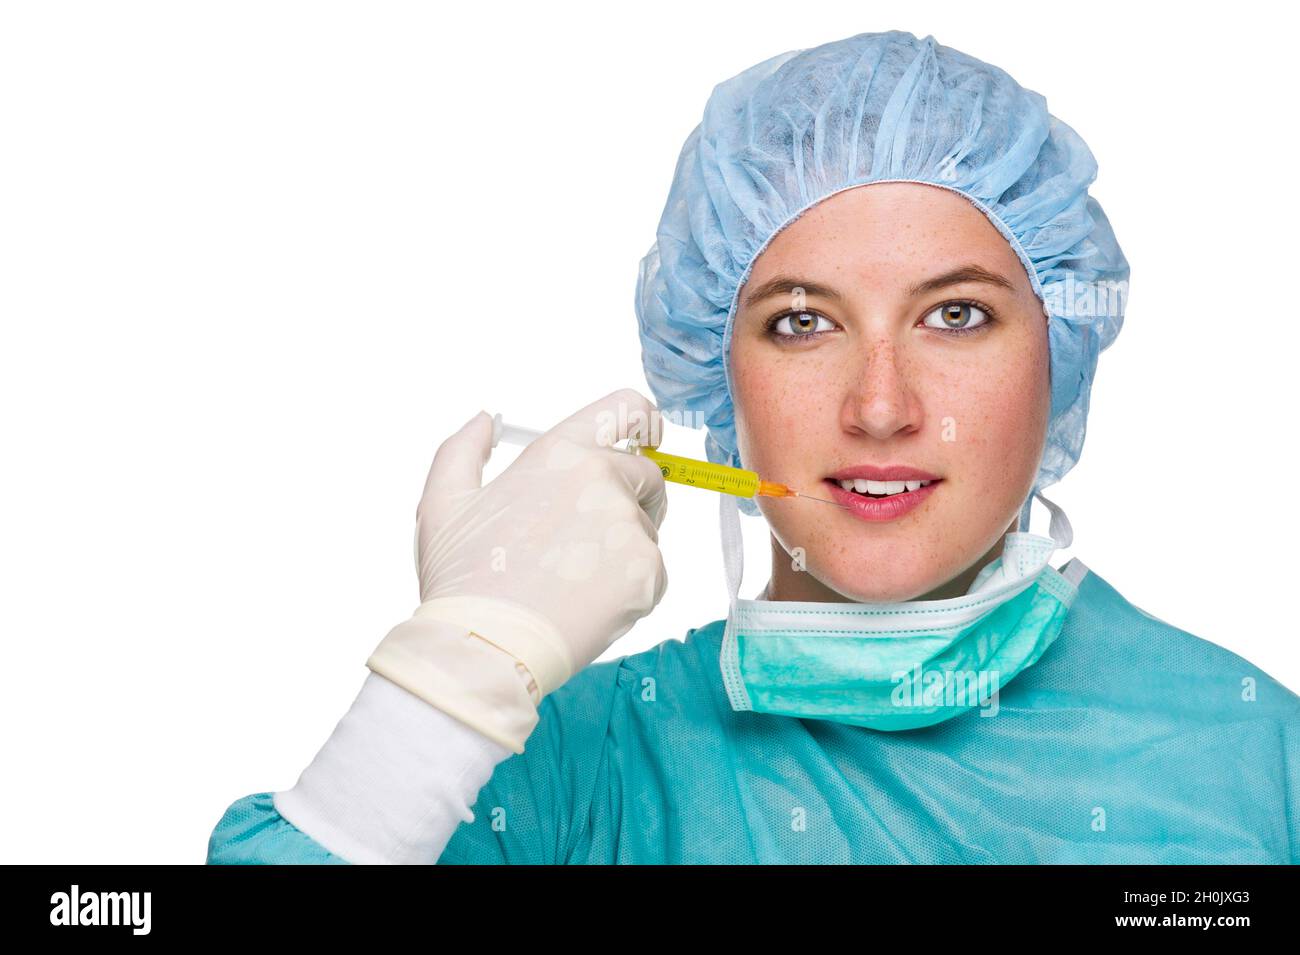 Chirurgische Krankenschwester mit Botox-Injektion Stockfoto